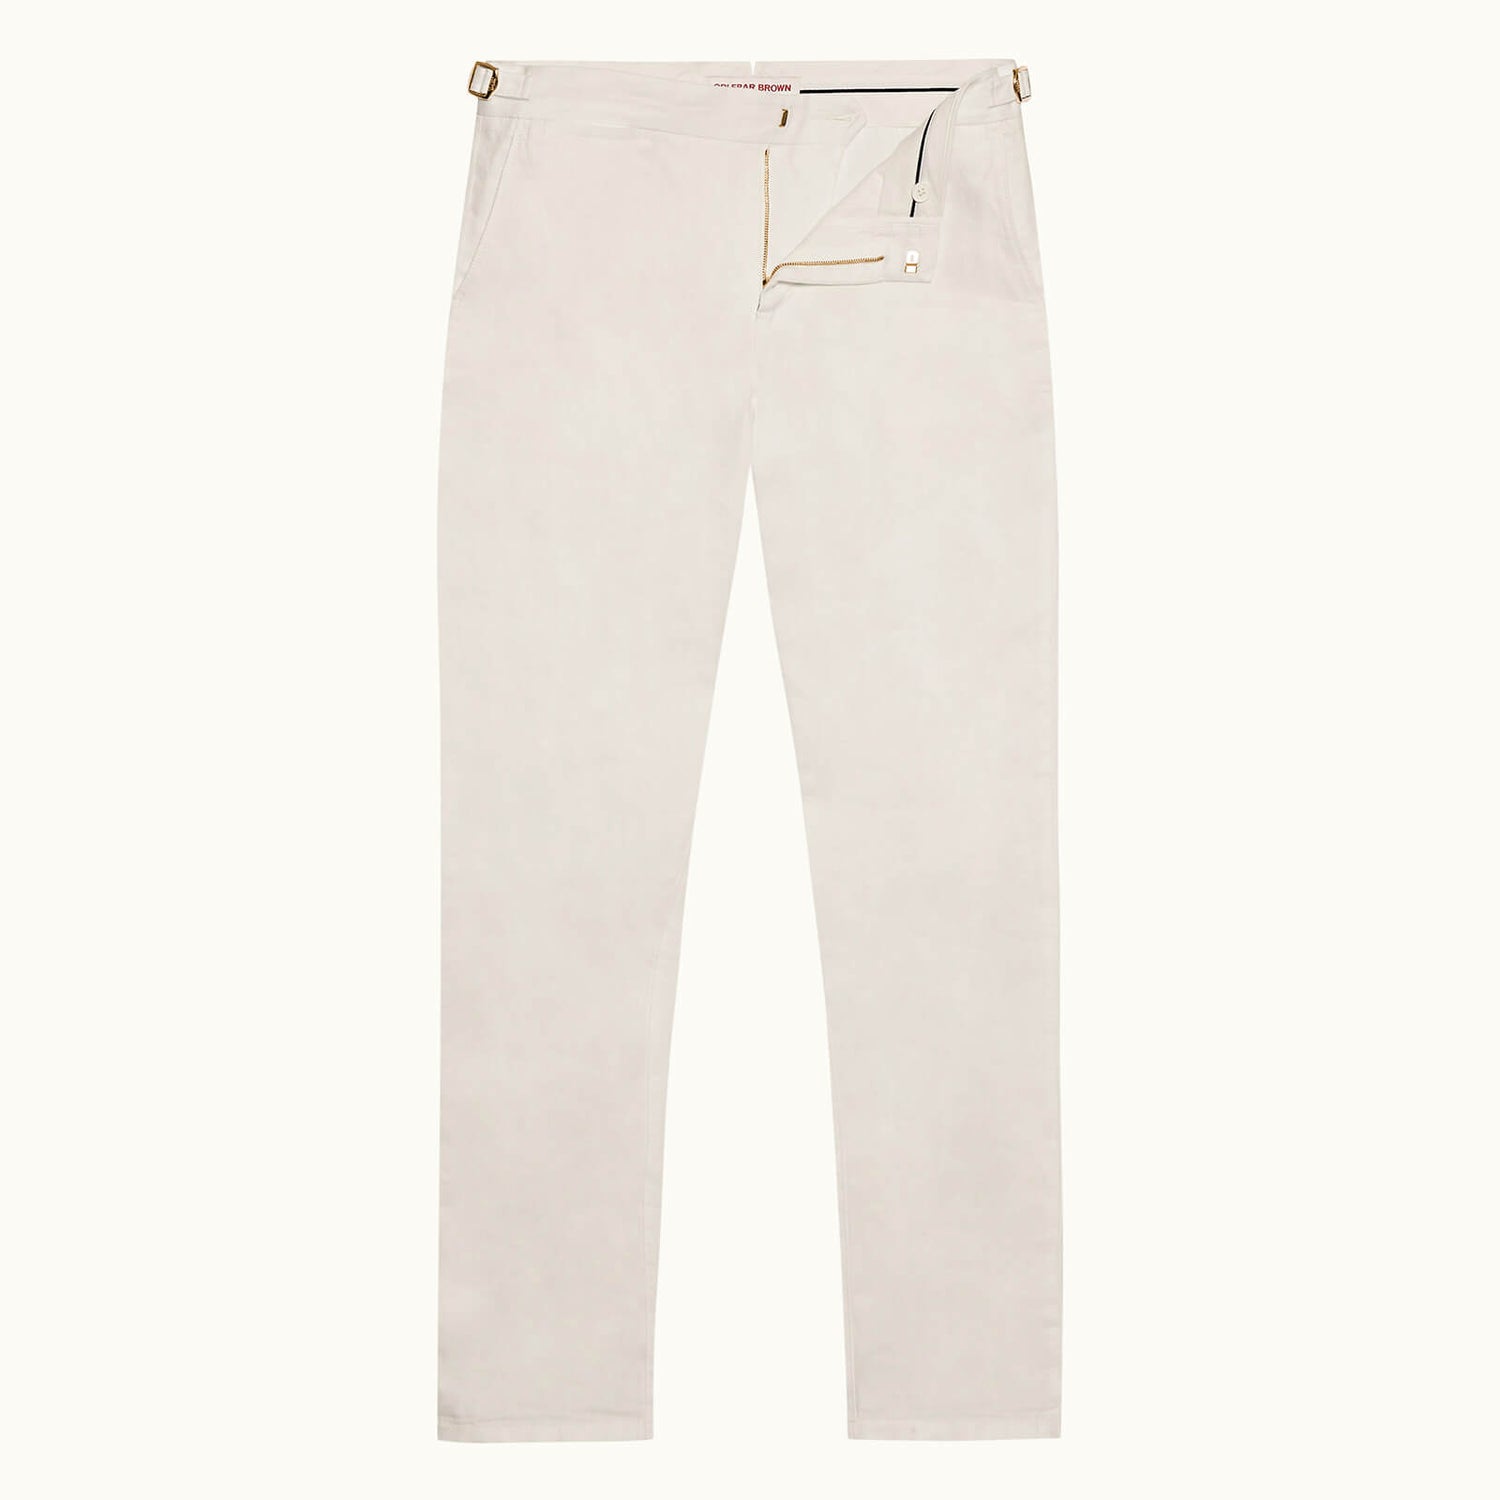 GRIFFON LINEN 系列合身剪裁亚麻长裤 - 纯白色